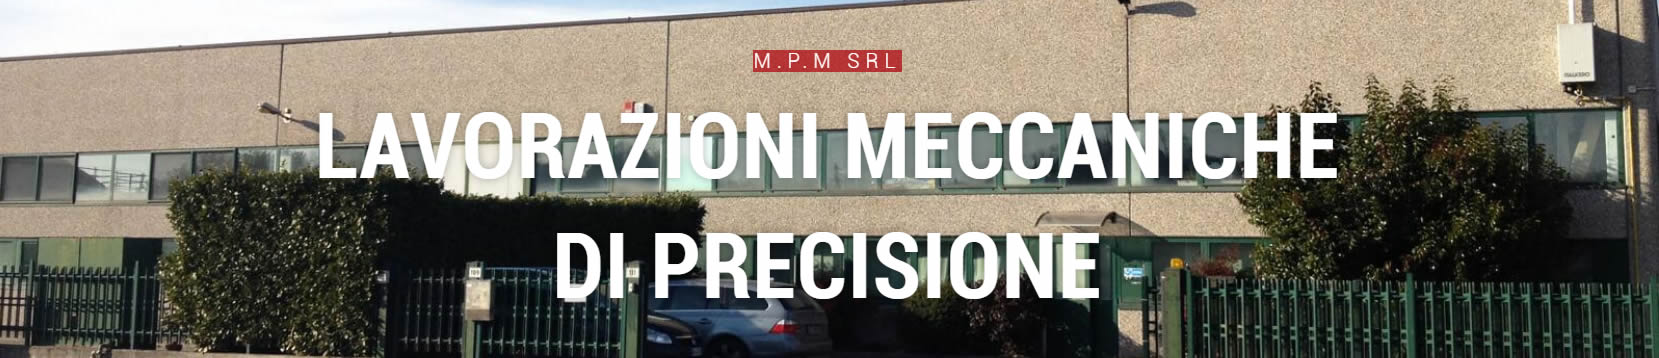 Officina meccanica di precisione Luino MPM srl